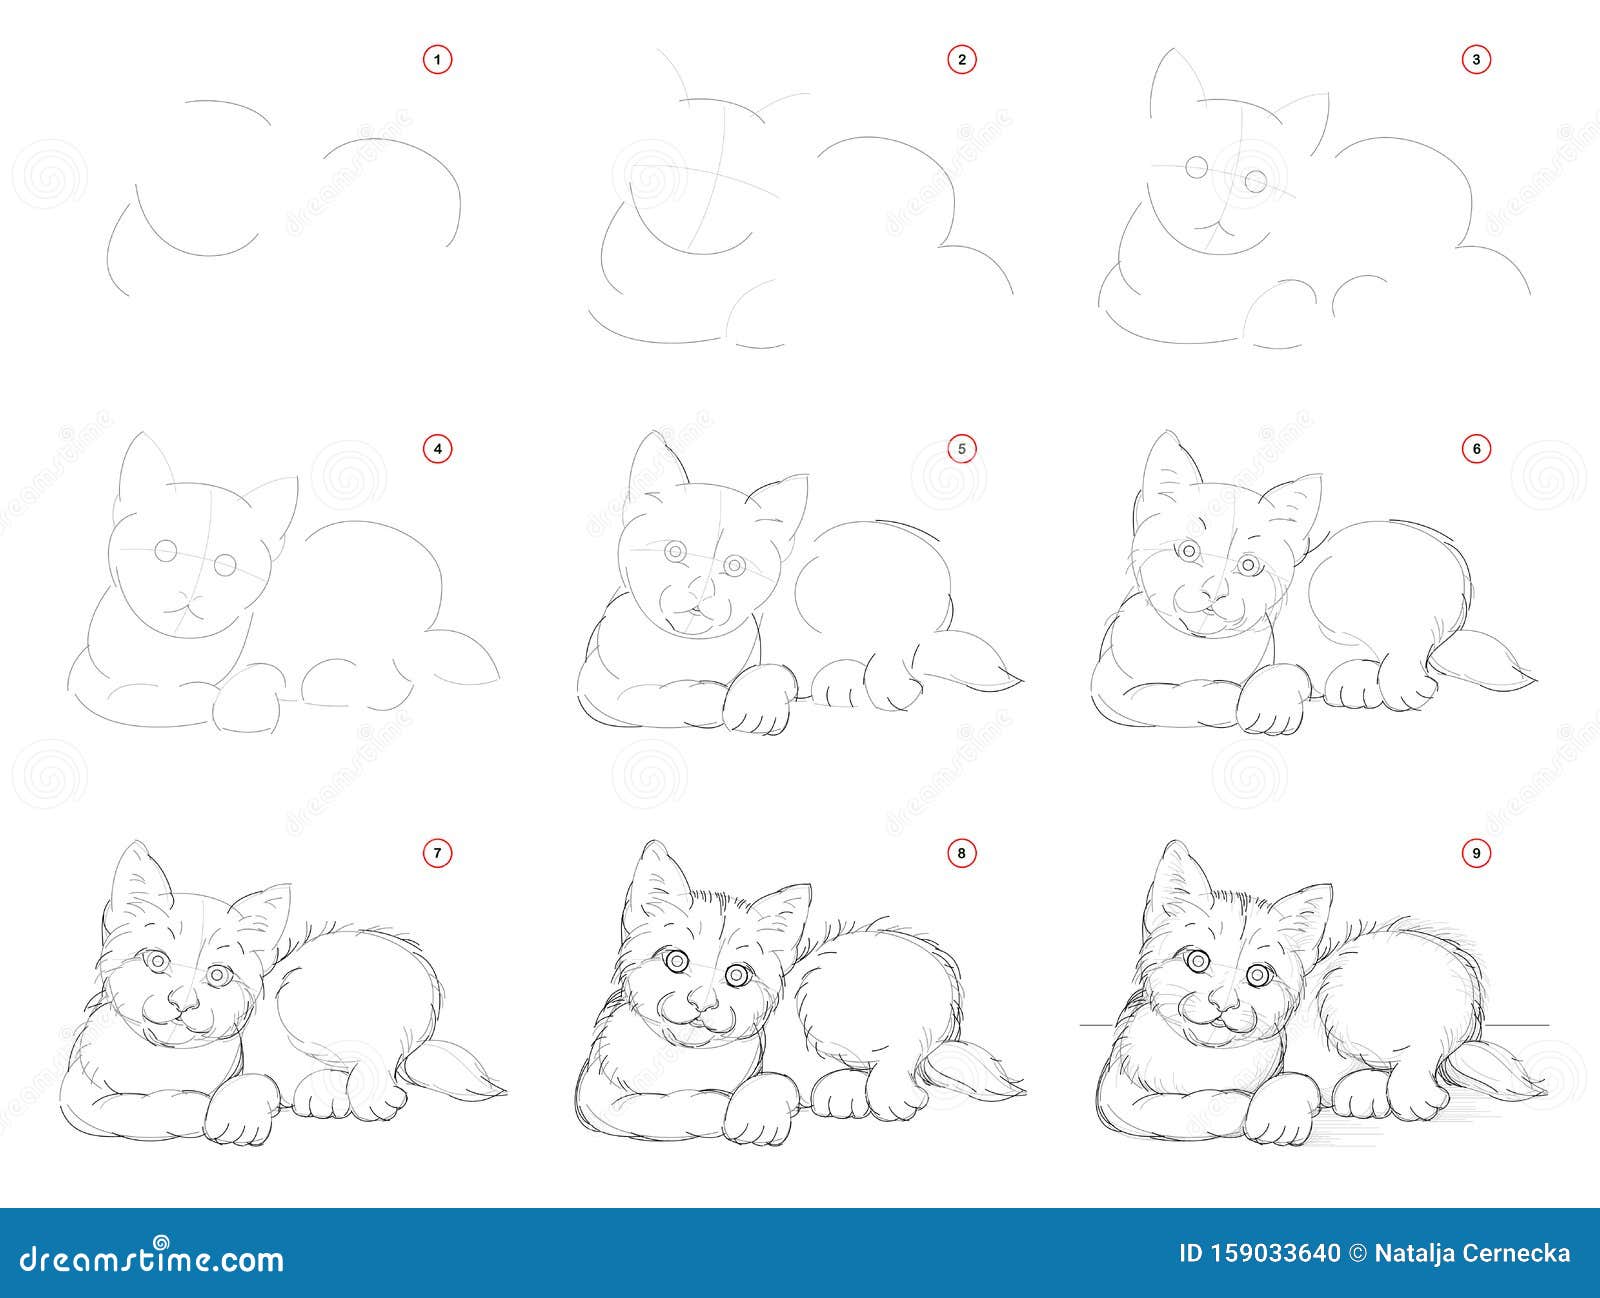 Рисунки для срисовки котята маленькие карандашом поэтапно